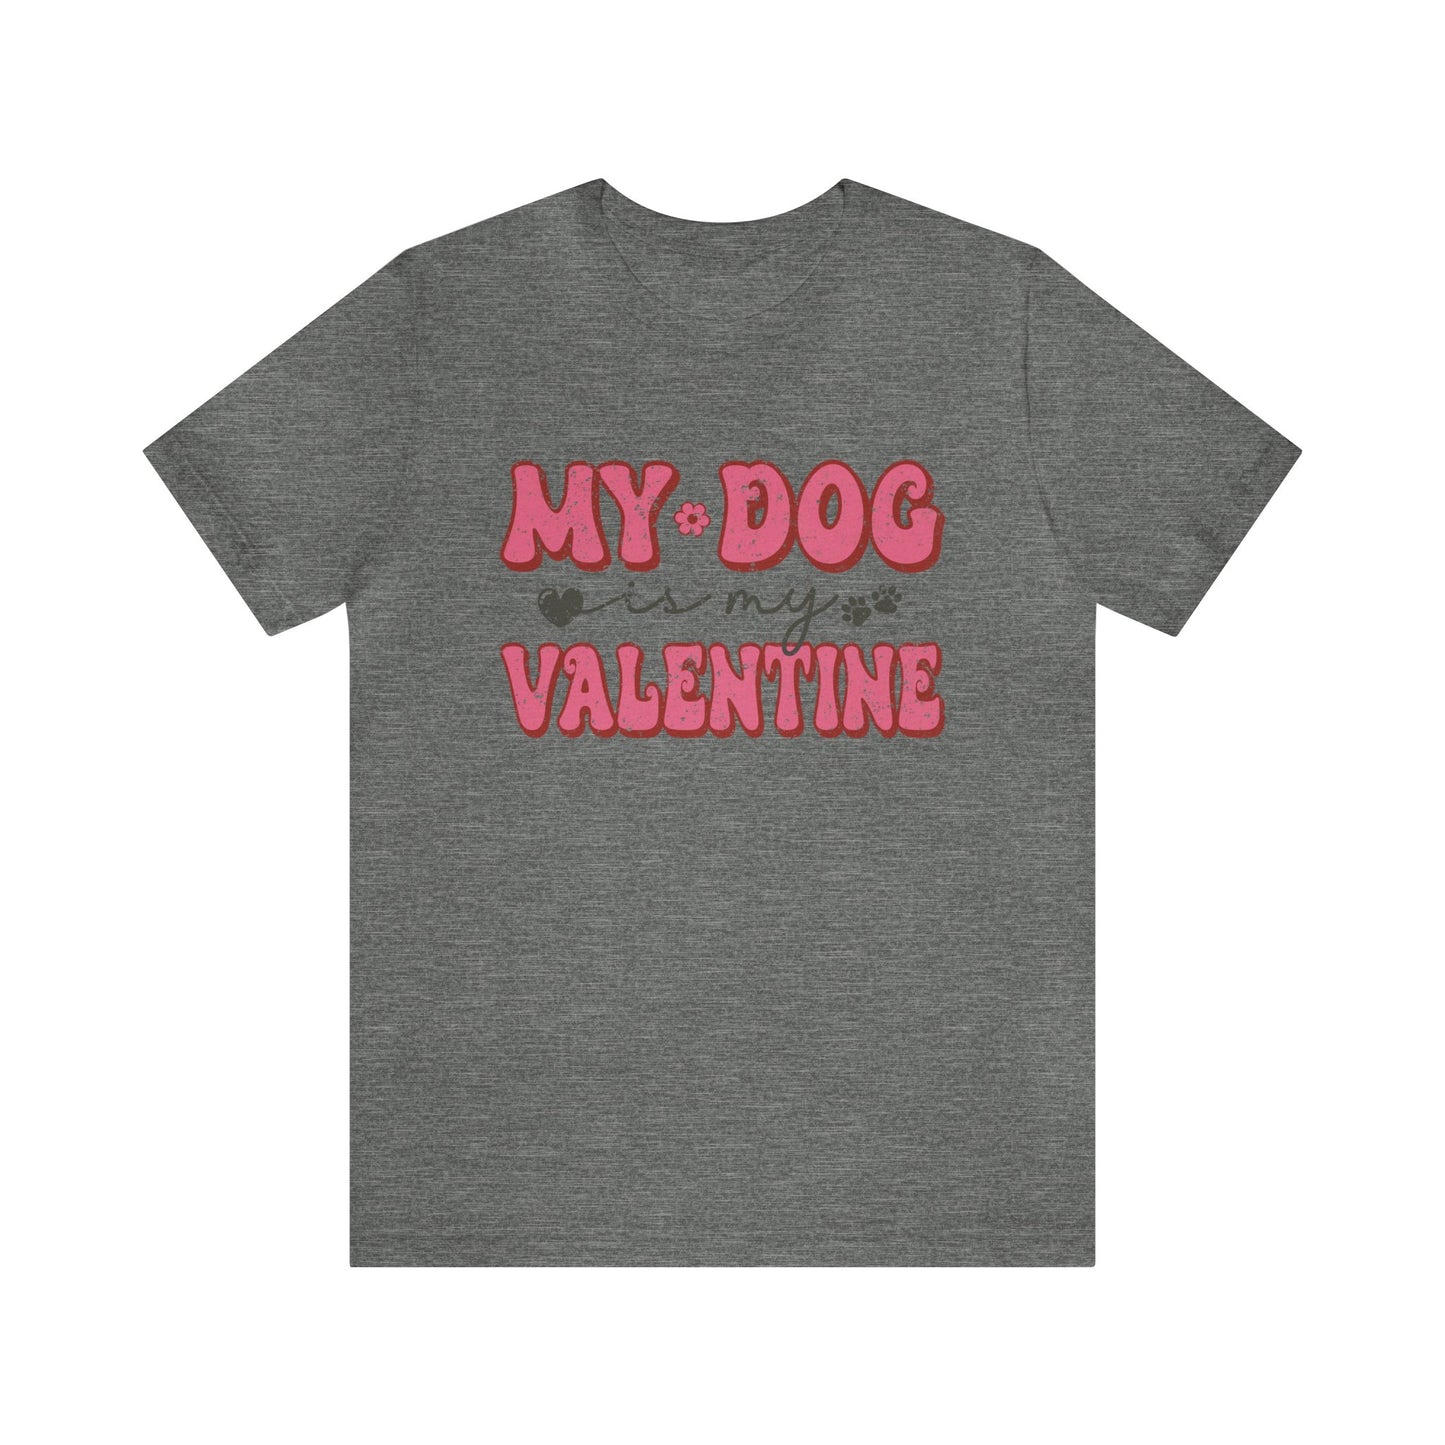 My Dog is My Valentine Women's Tshirt